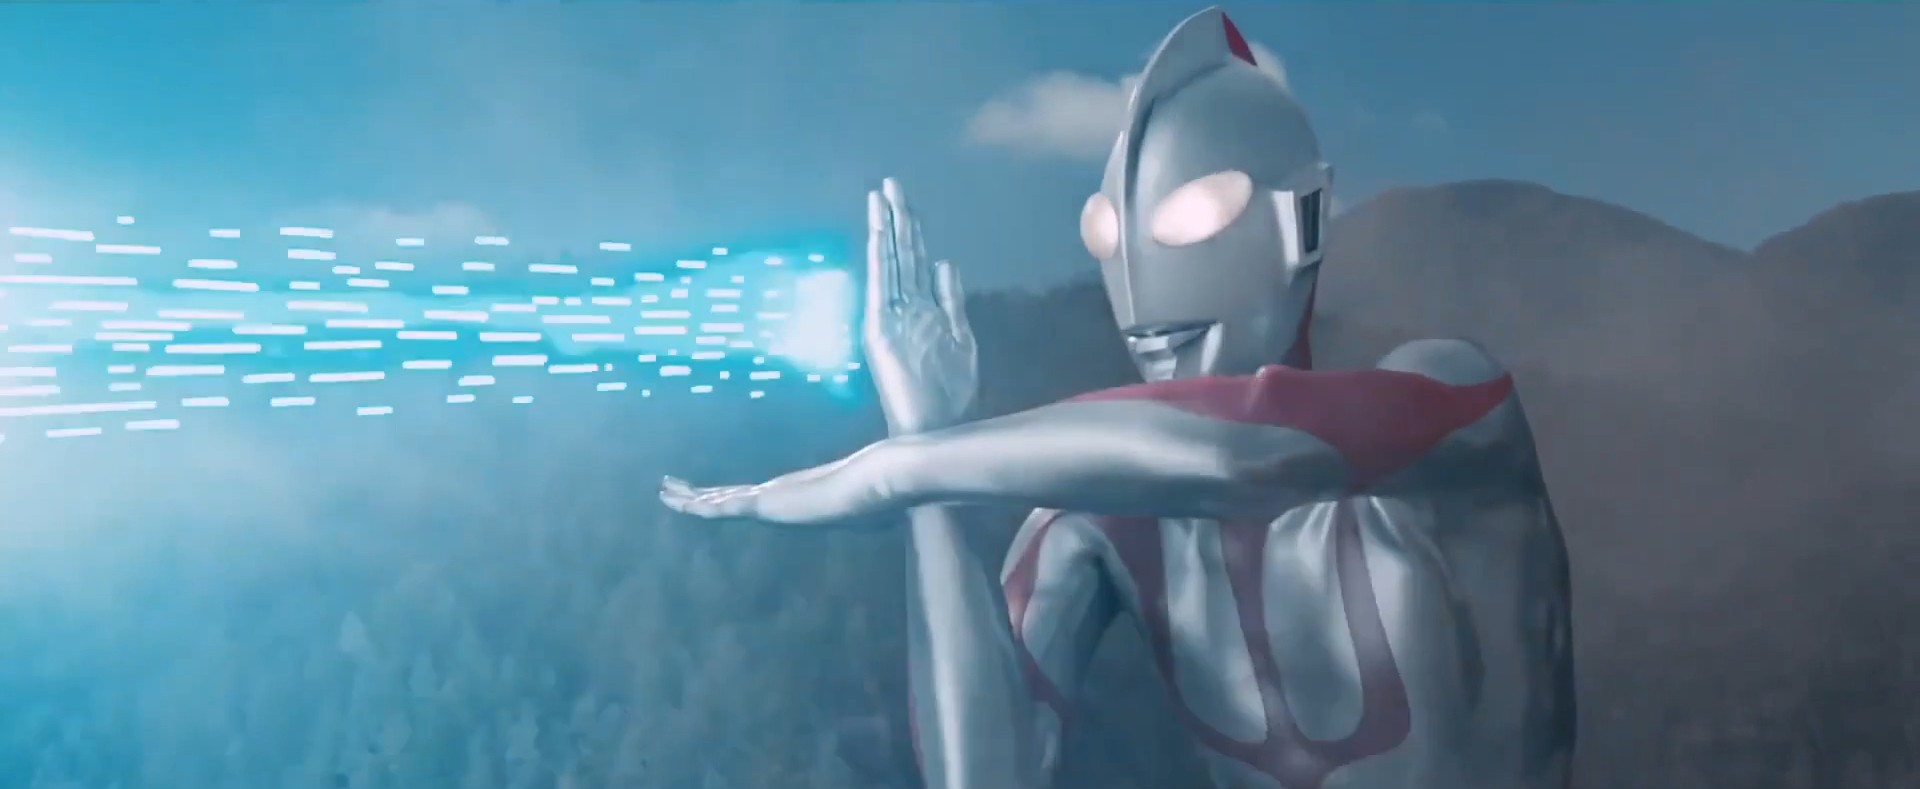 Ultraman mantém seus antebraços juntos para criar seu raio Spacium, que dispara na frente dele.